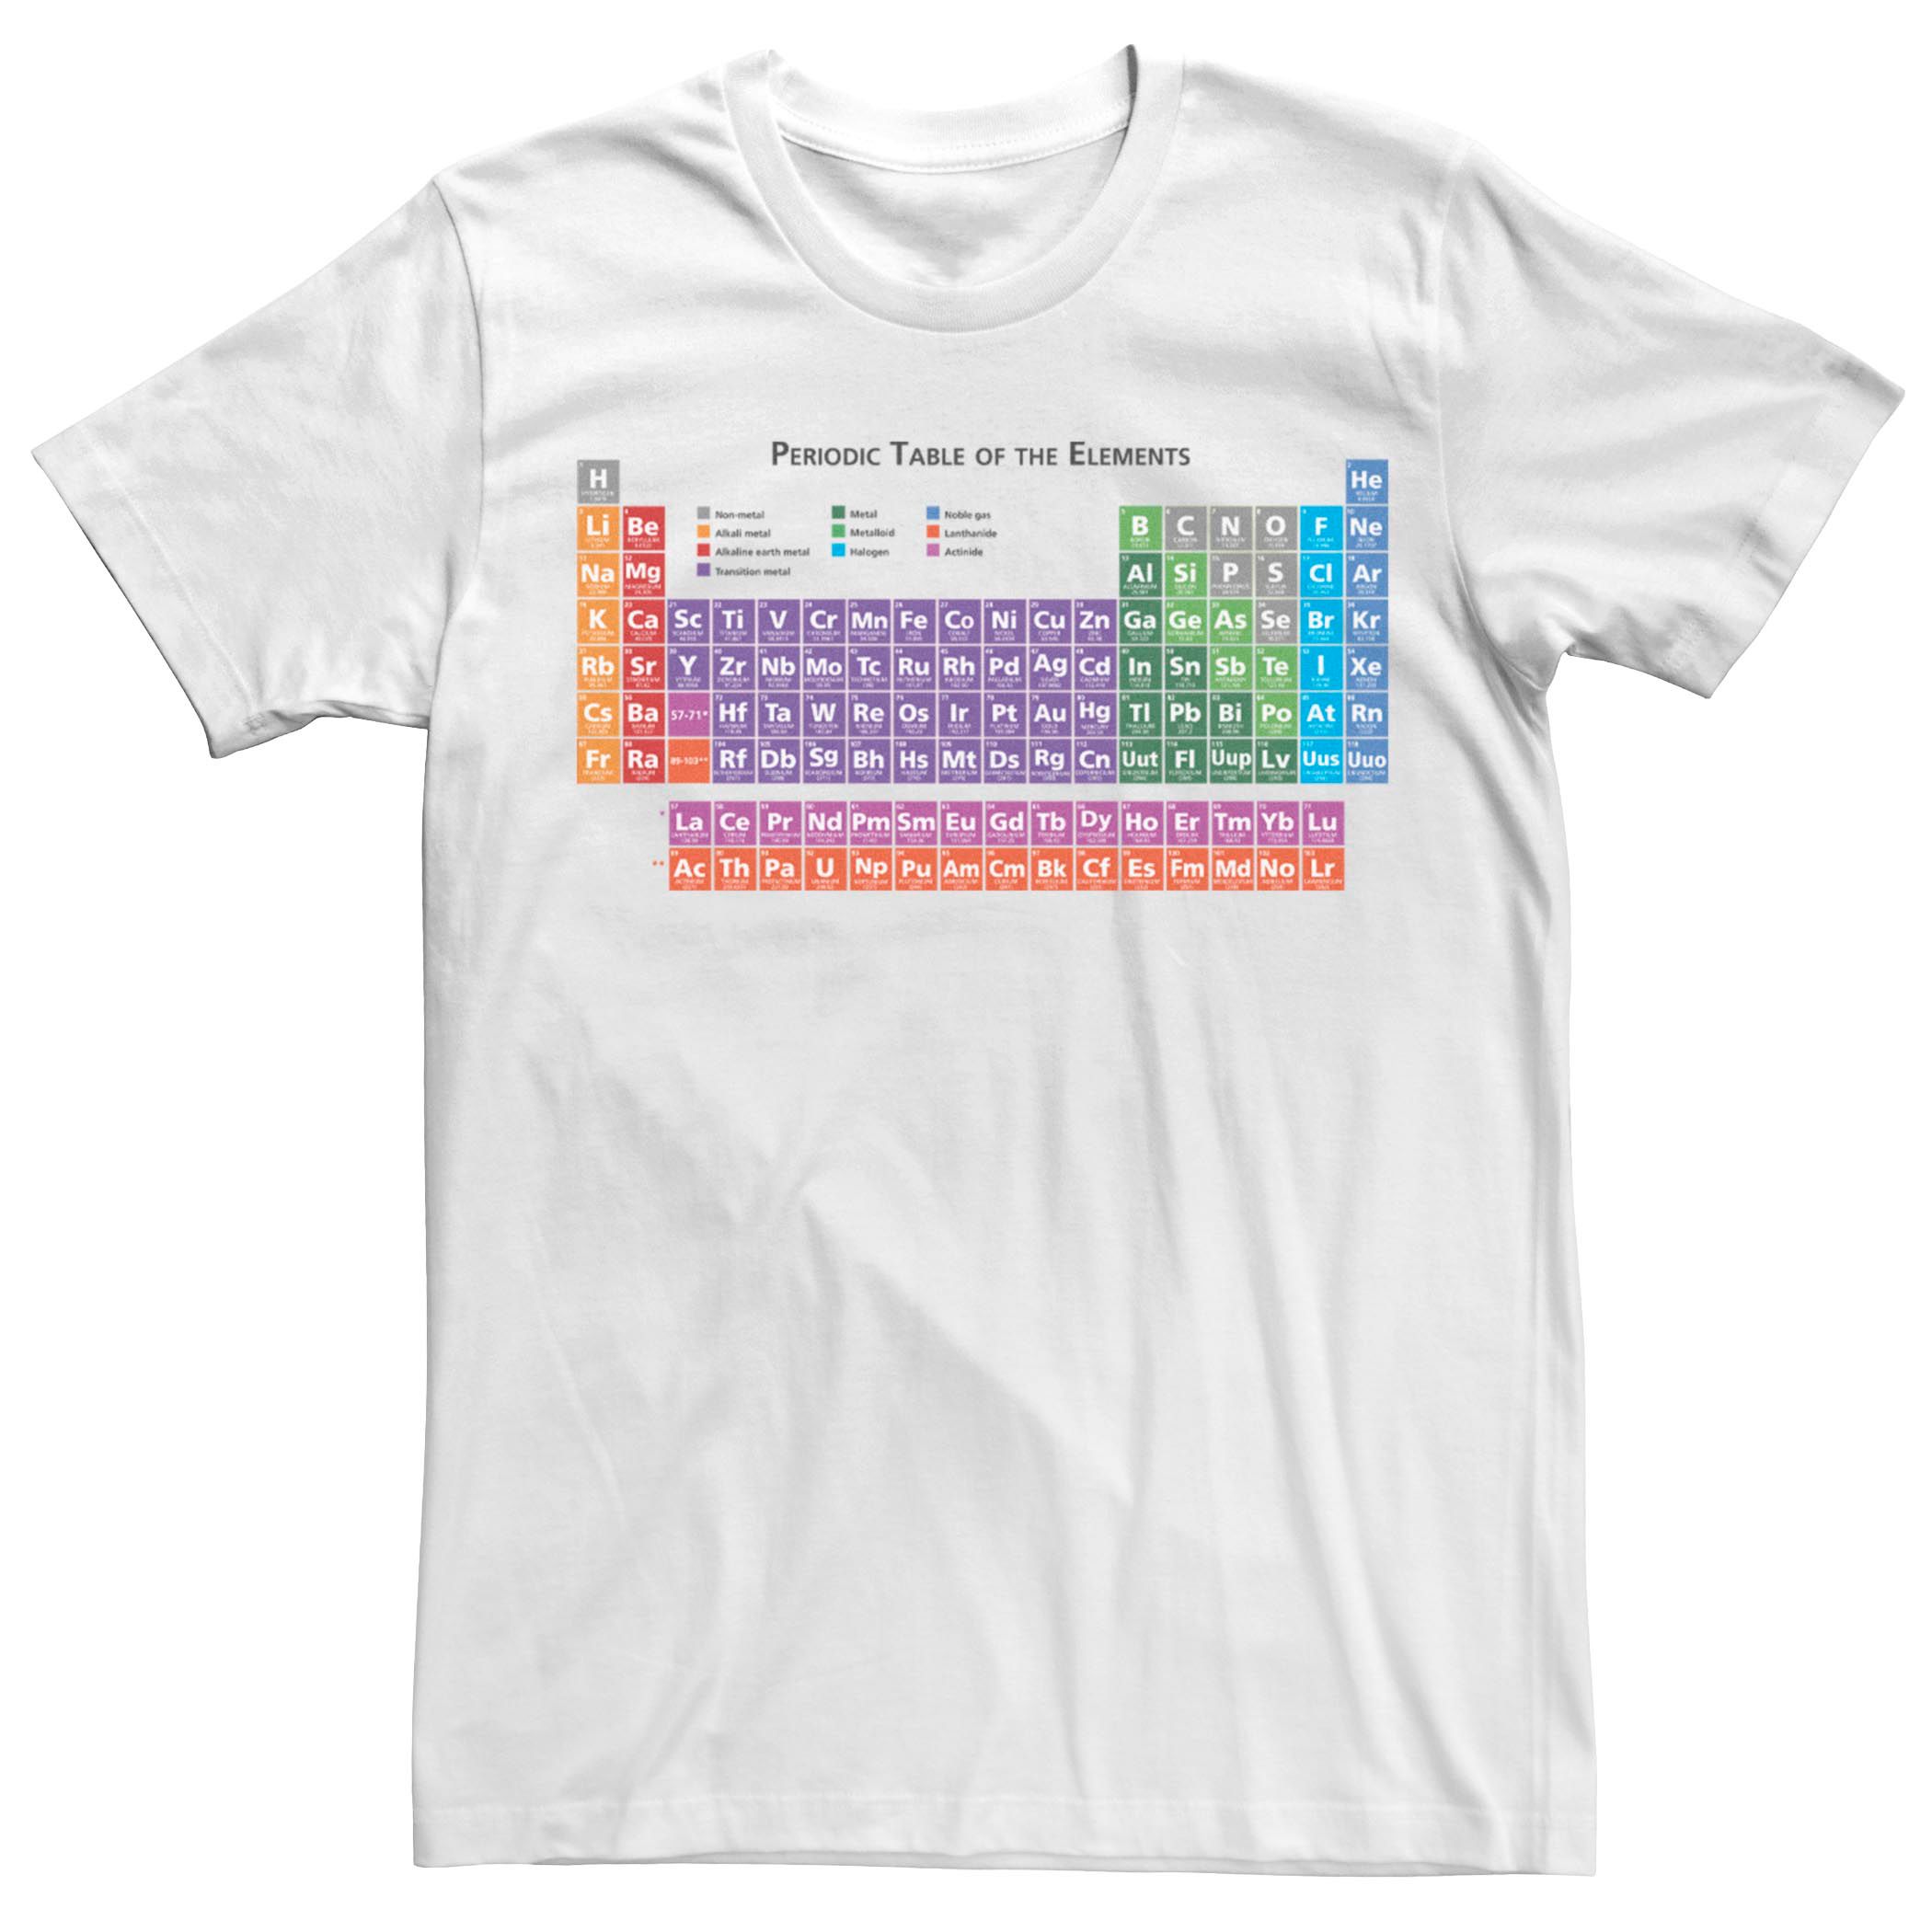 Мужская футболка с периодической таблицей элементов Fifth Sun пазл с периодической таблицей rex